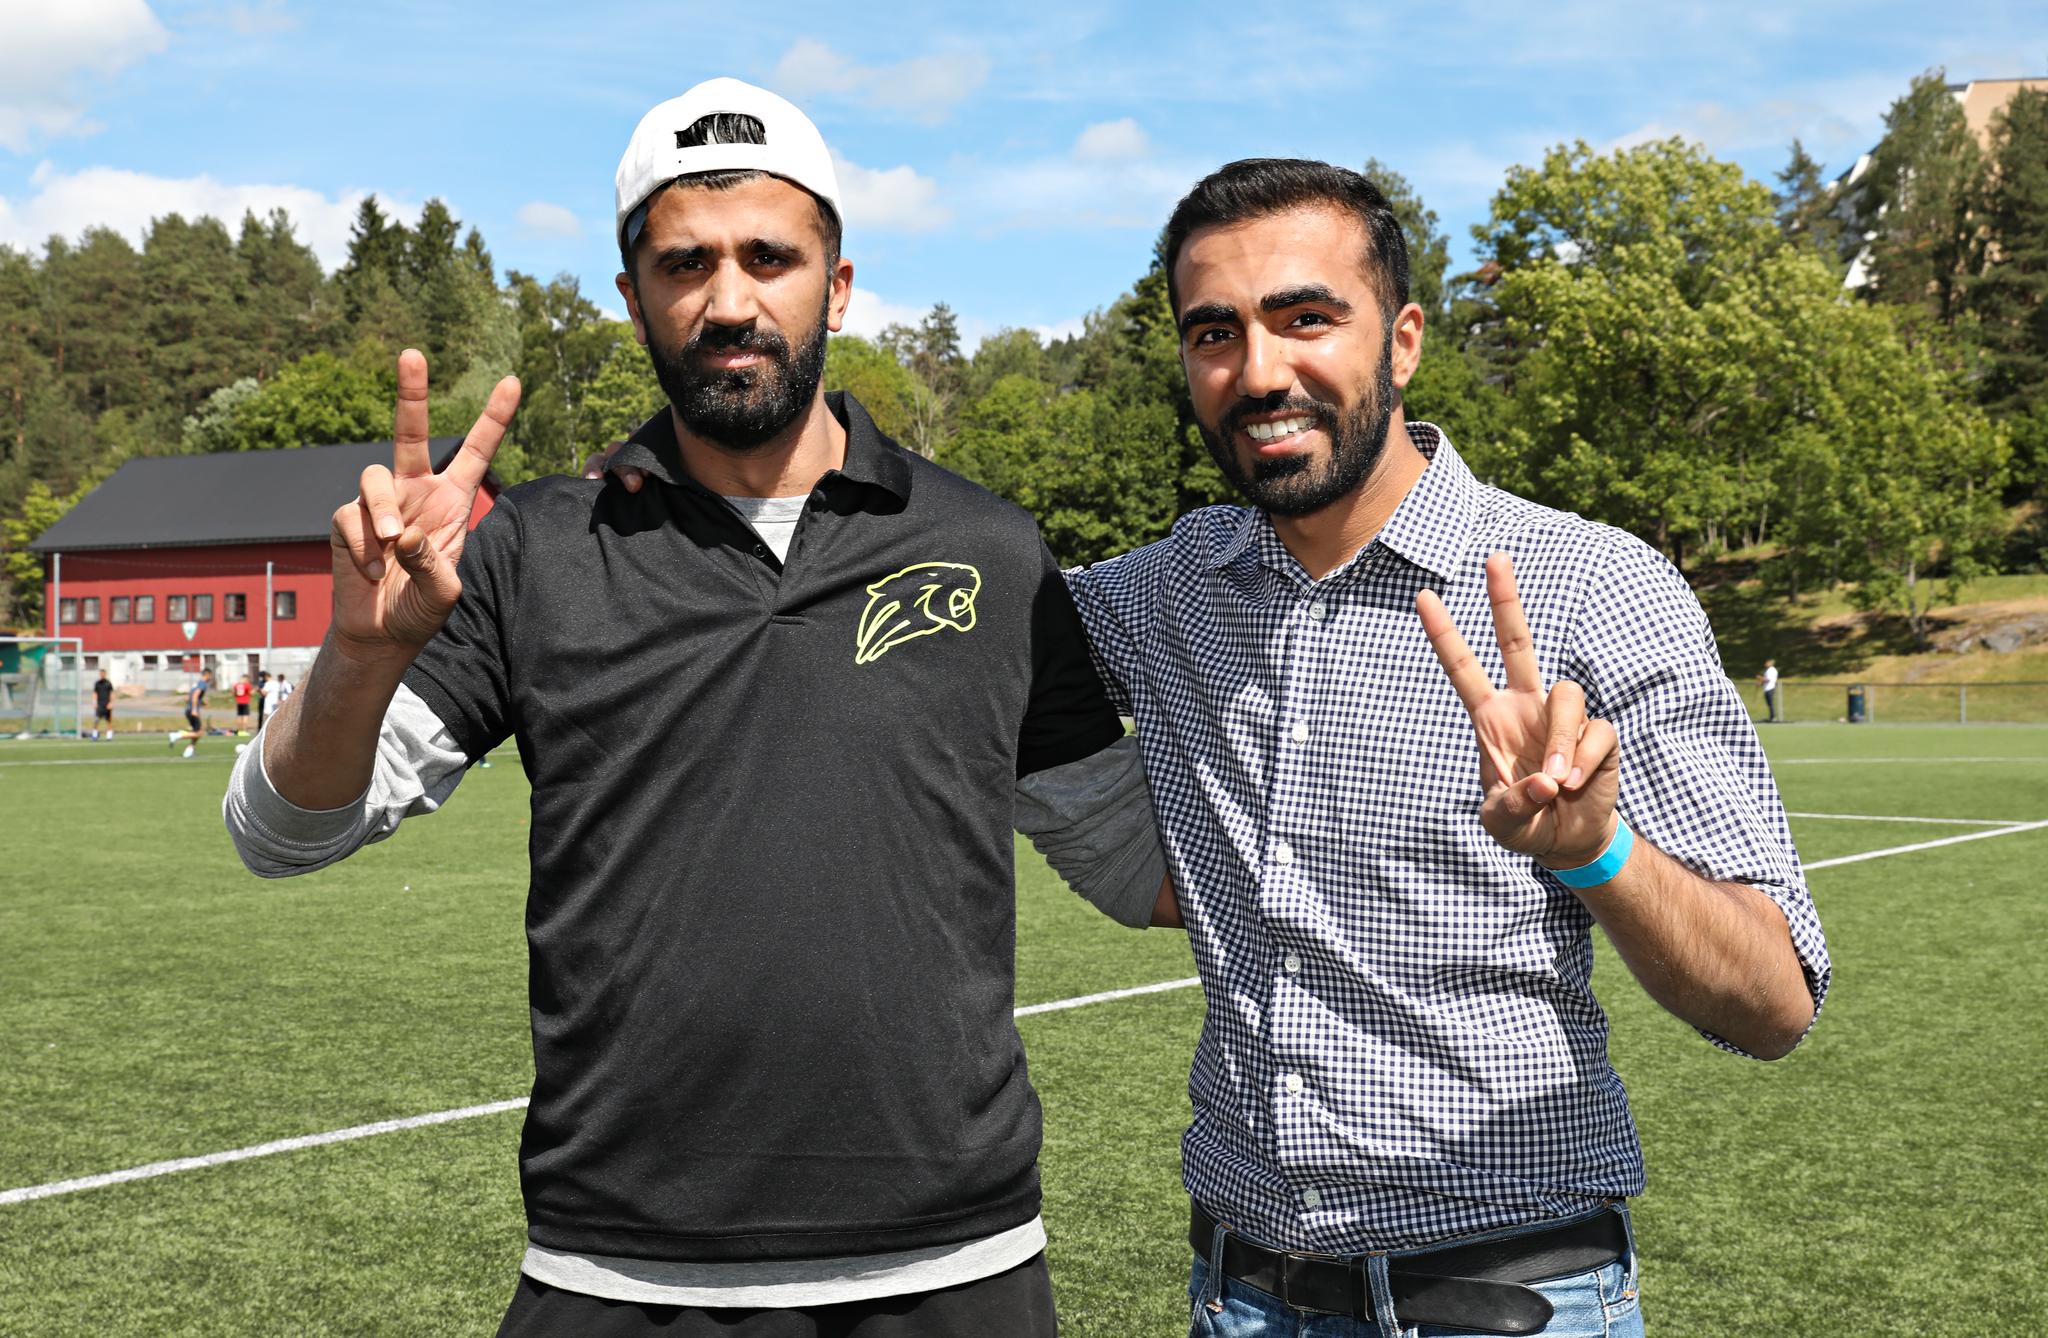 Mohsan Raja (til venstre) og Usman Mushtaq kom på banen for fire uker siden for å hjelpe de unge på Stovner og Vestli. Lørdag arrangerte de fotballturnering der flere hundre ungdommer var innom.